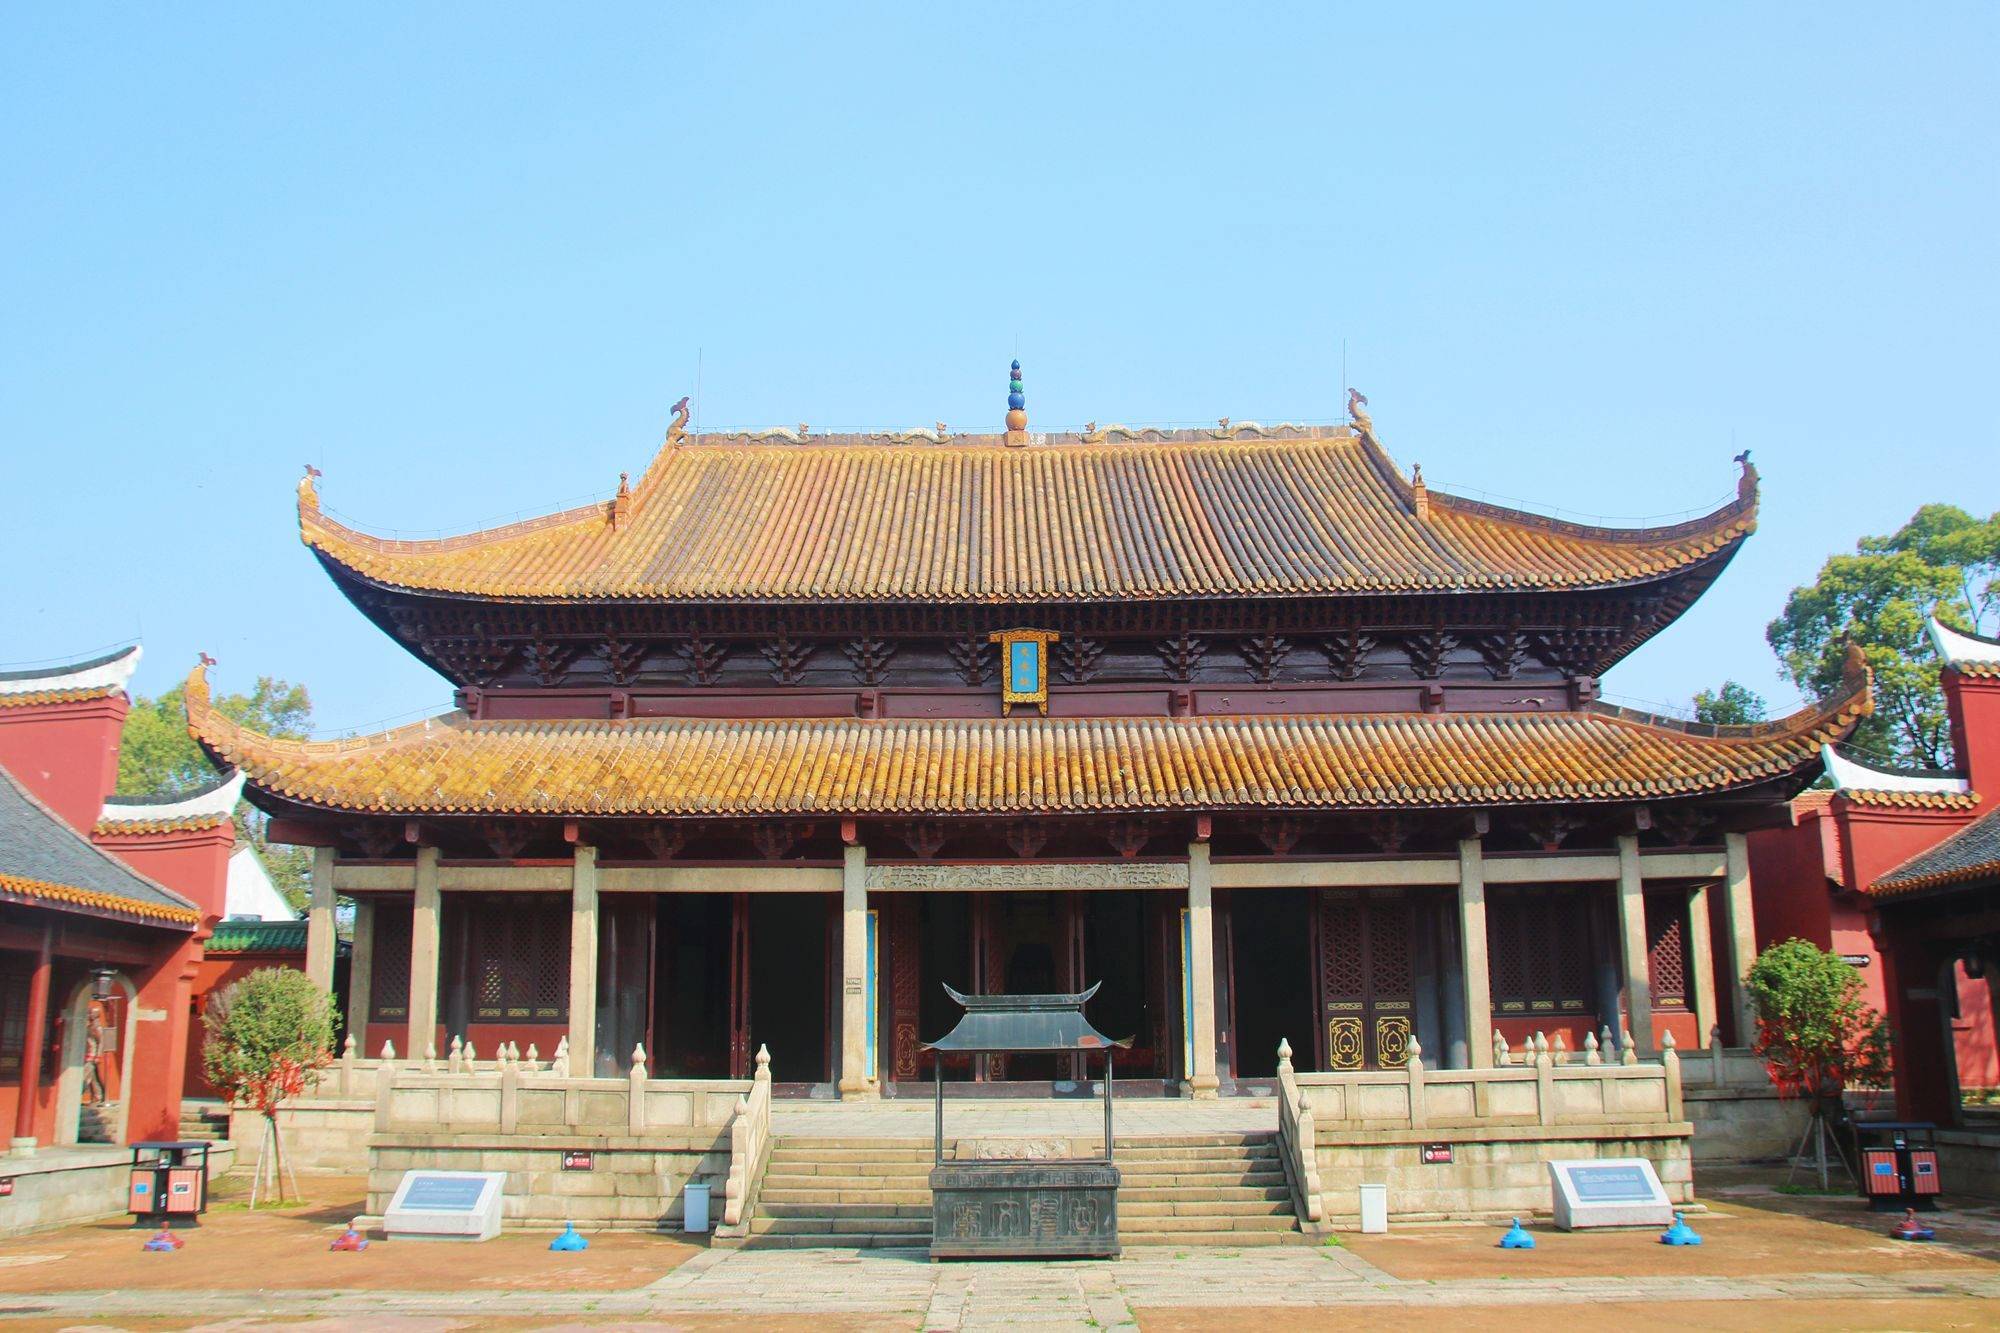 岳阳文庙,隐藏在闹市中的千年学府,承载了丰厚的历史底蕴